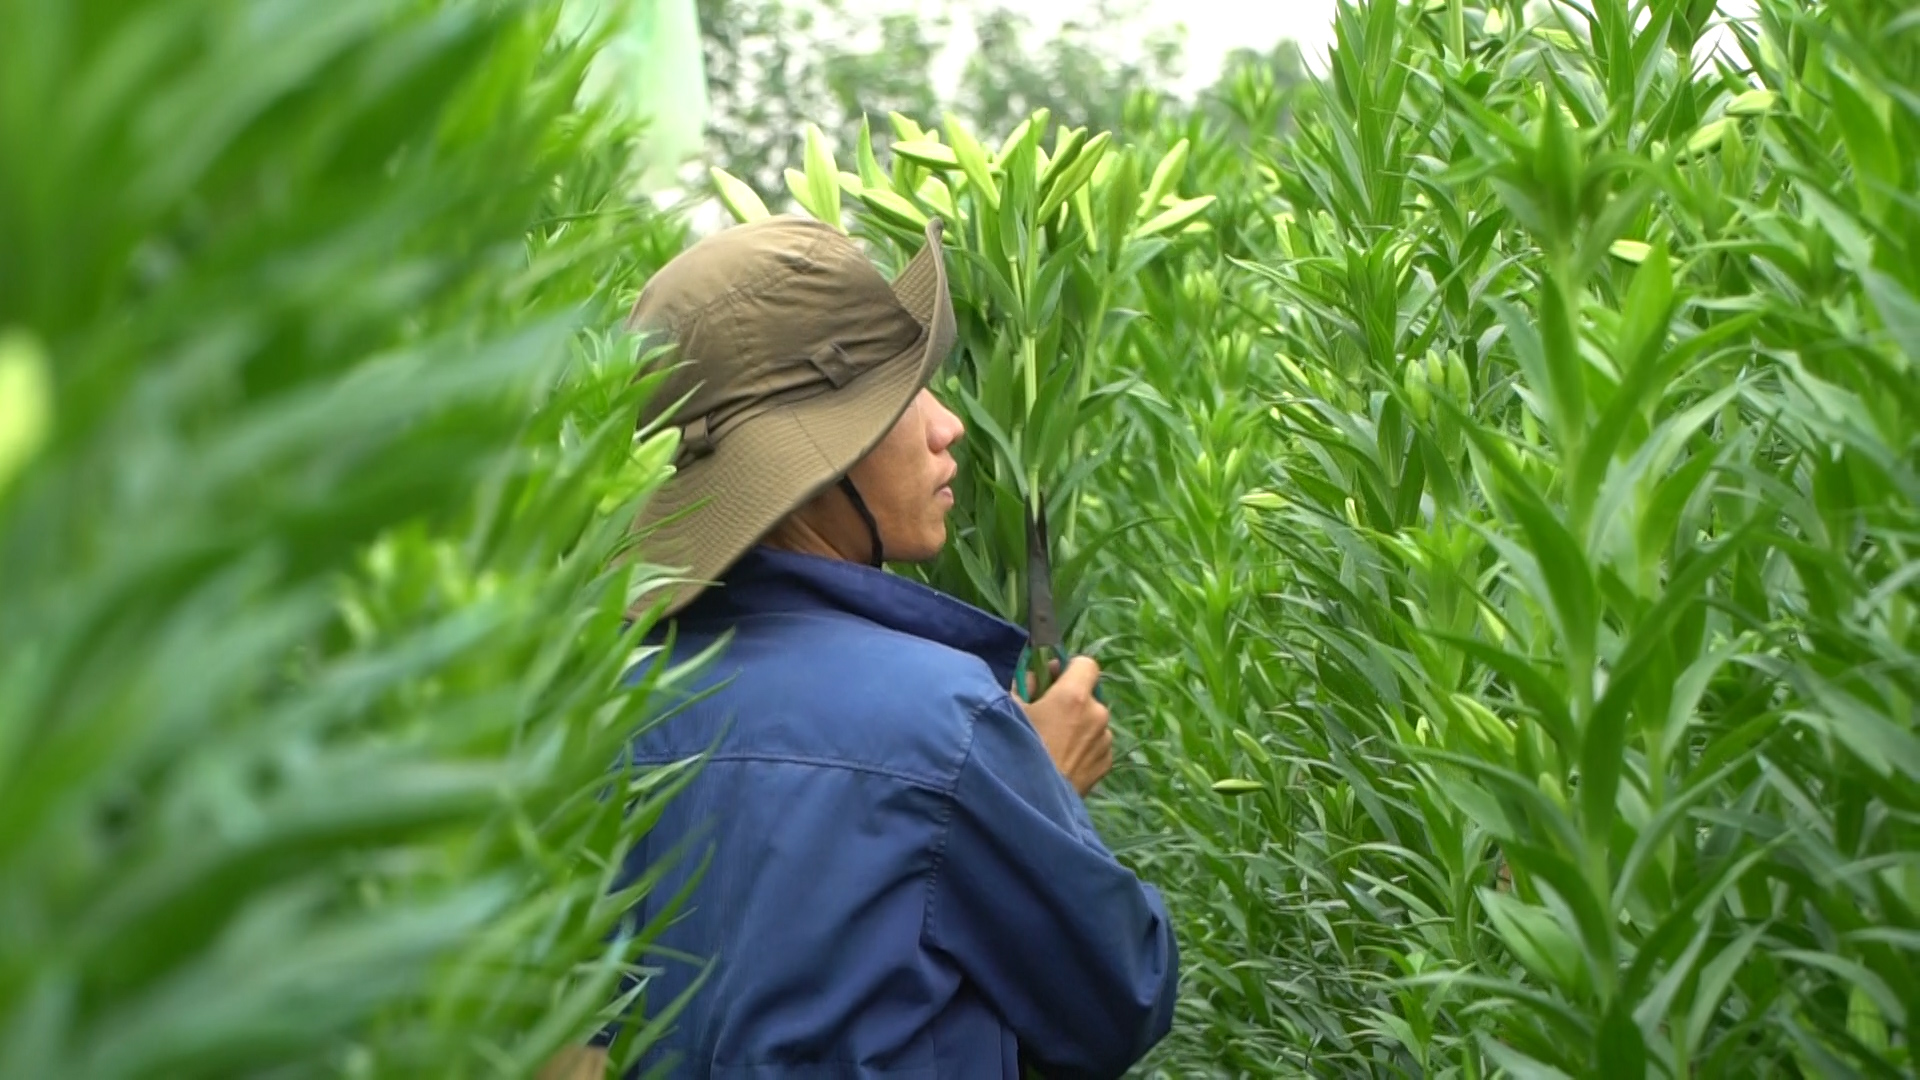 Hoa loa kèn bất ngờ tăng giá giữa mùa, nông dân Đan Phượng phấn khởi - Ảnh 2.